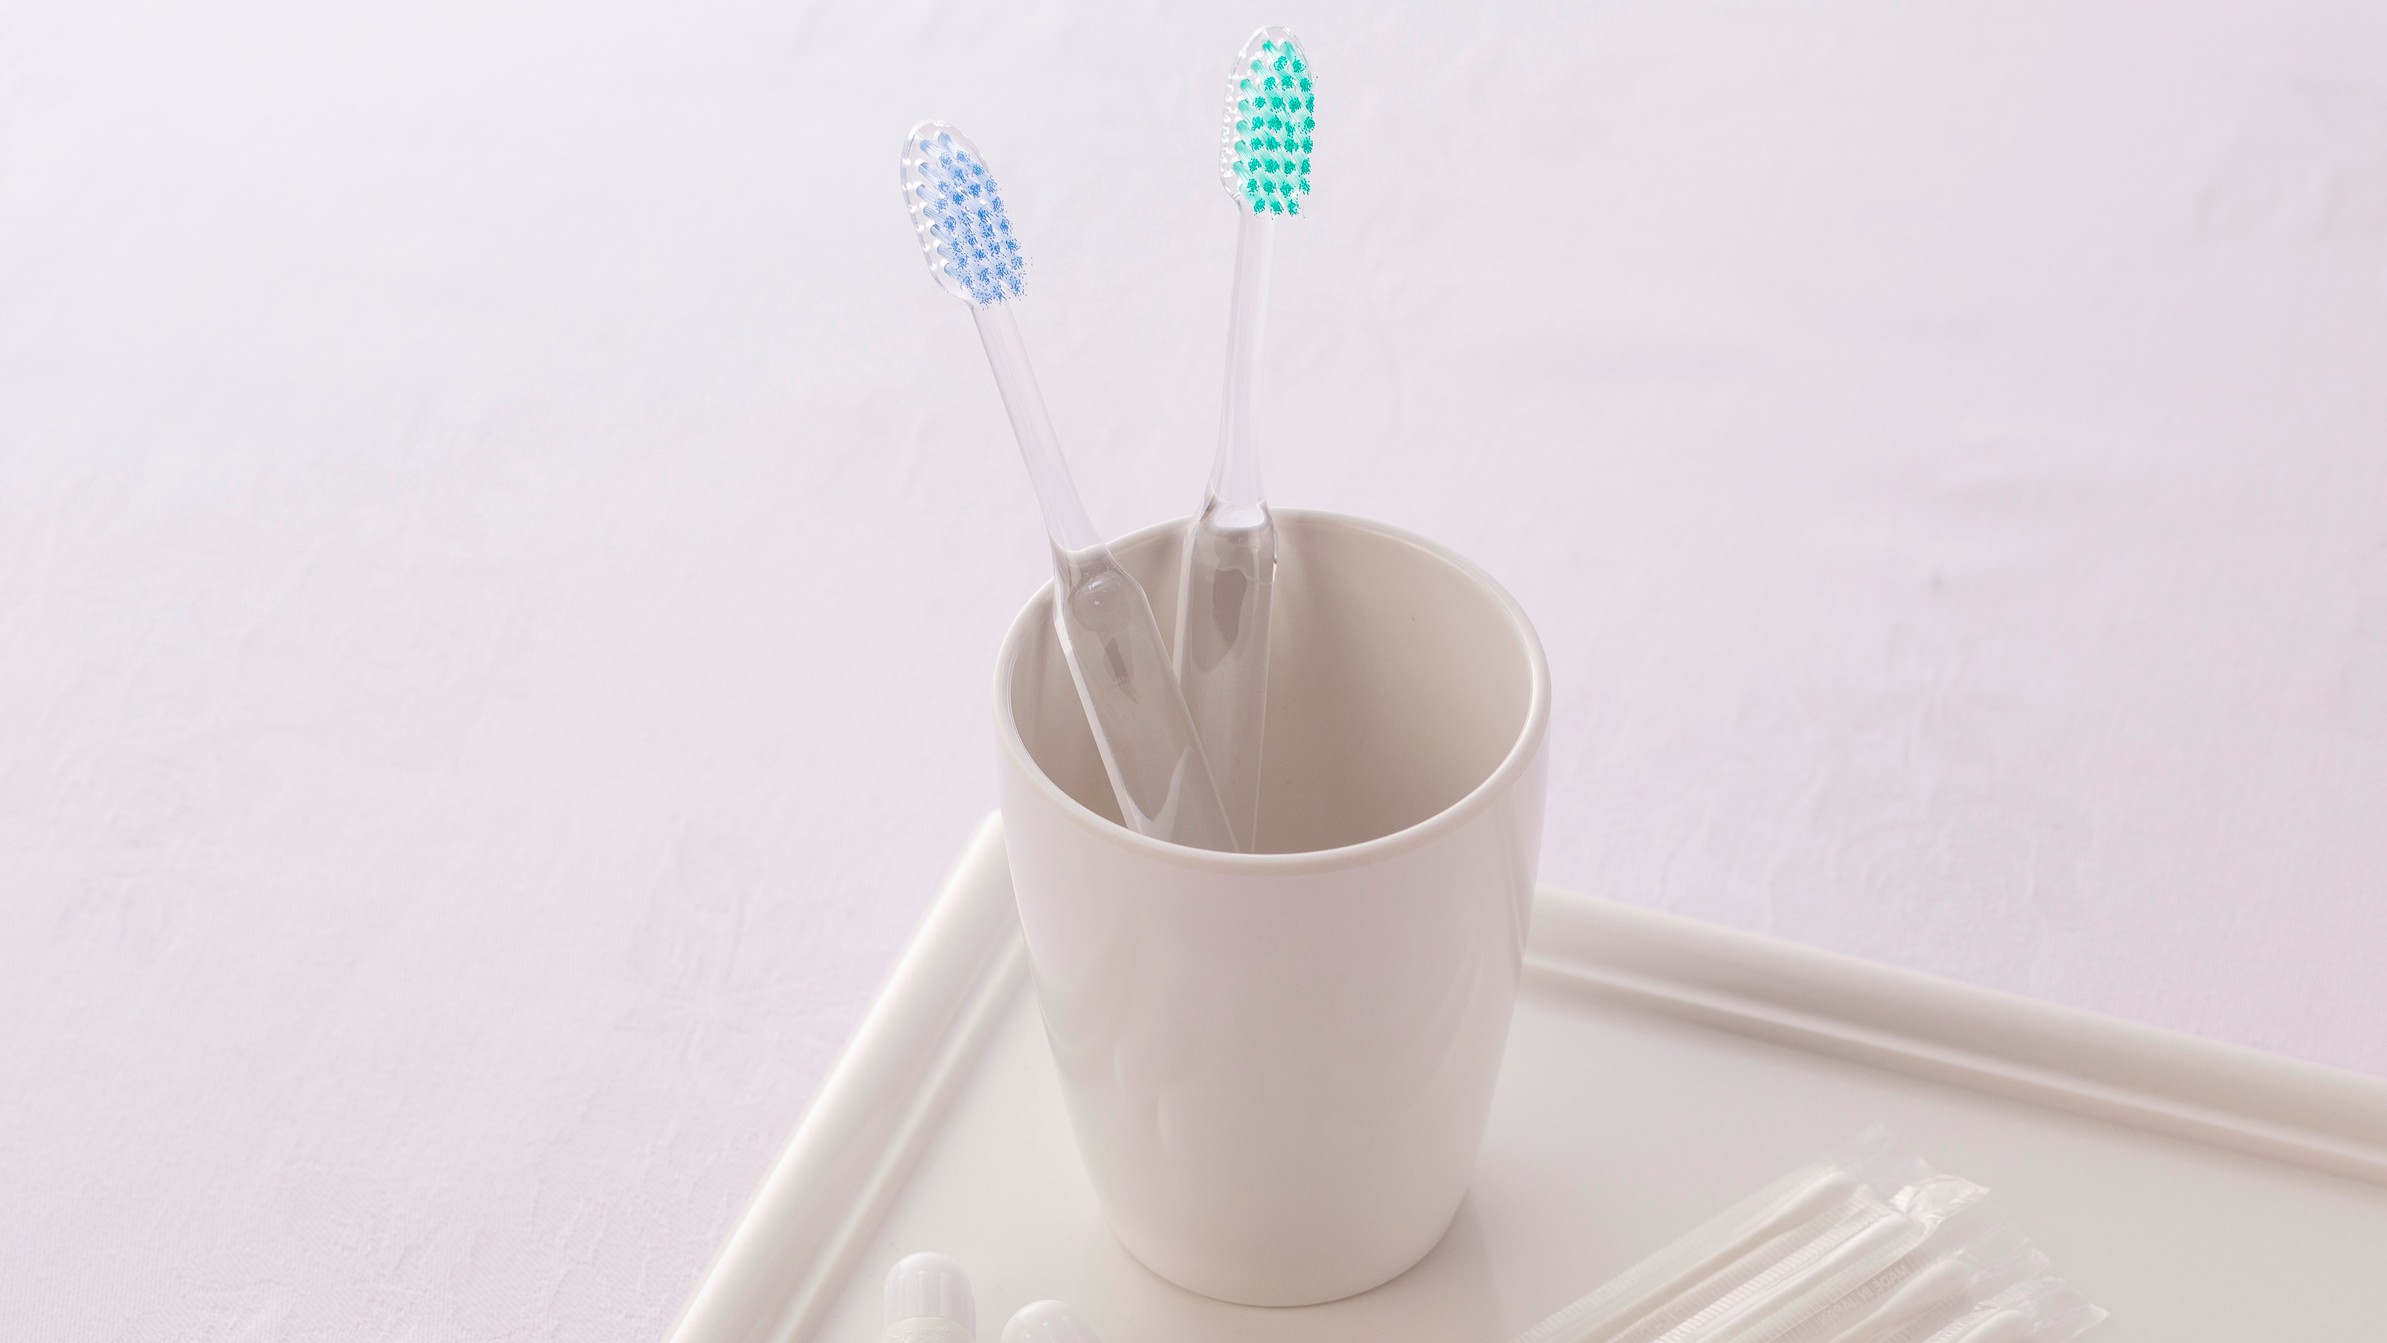  歯ブラシセット  歯ブラシと歯磨き粉のセット